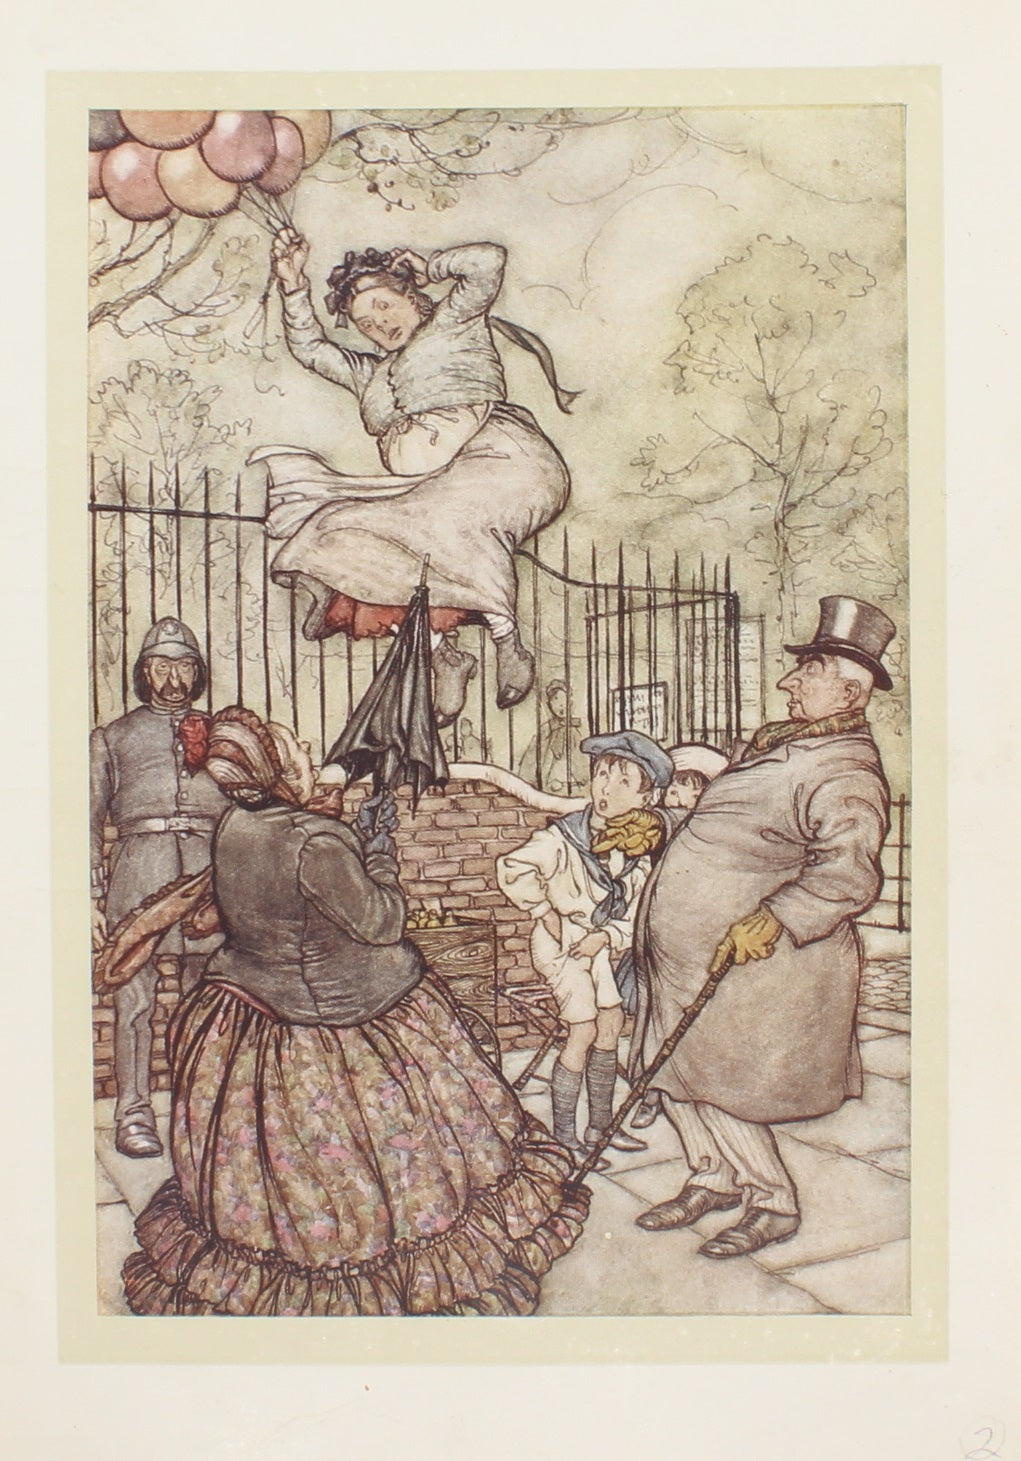 Storytime, Rackham Arthur, Story Illustration, Early 1900s